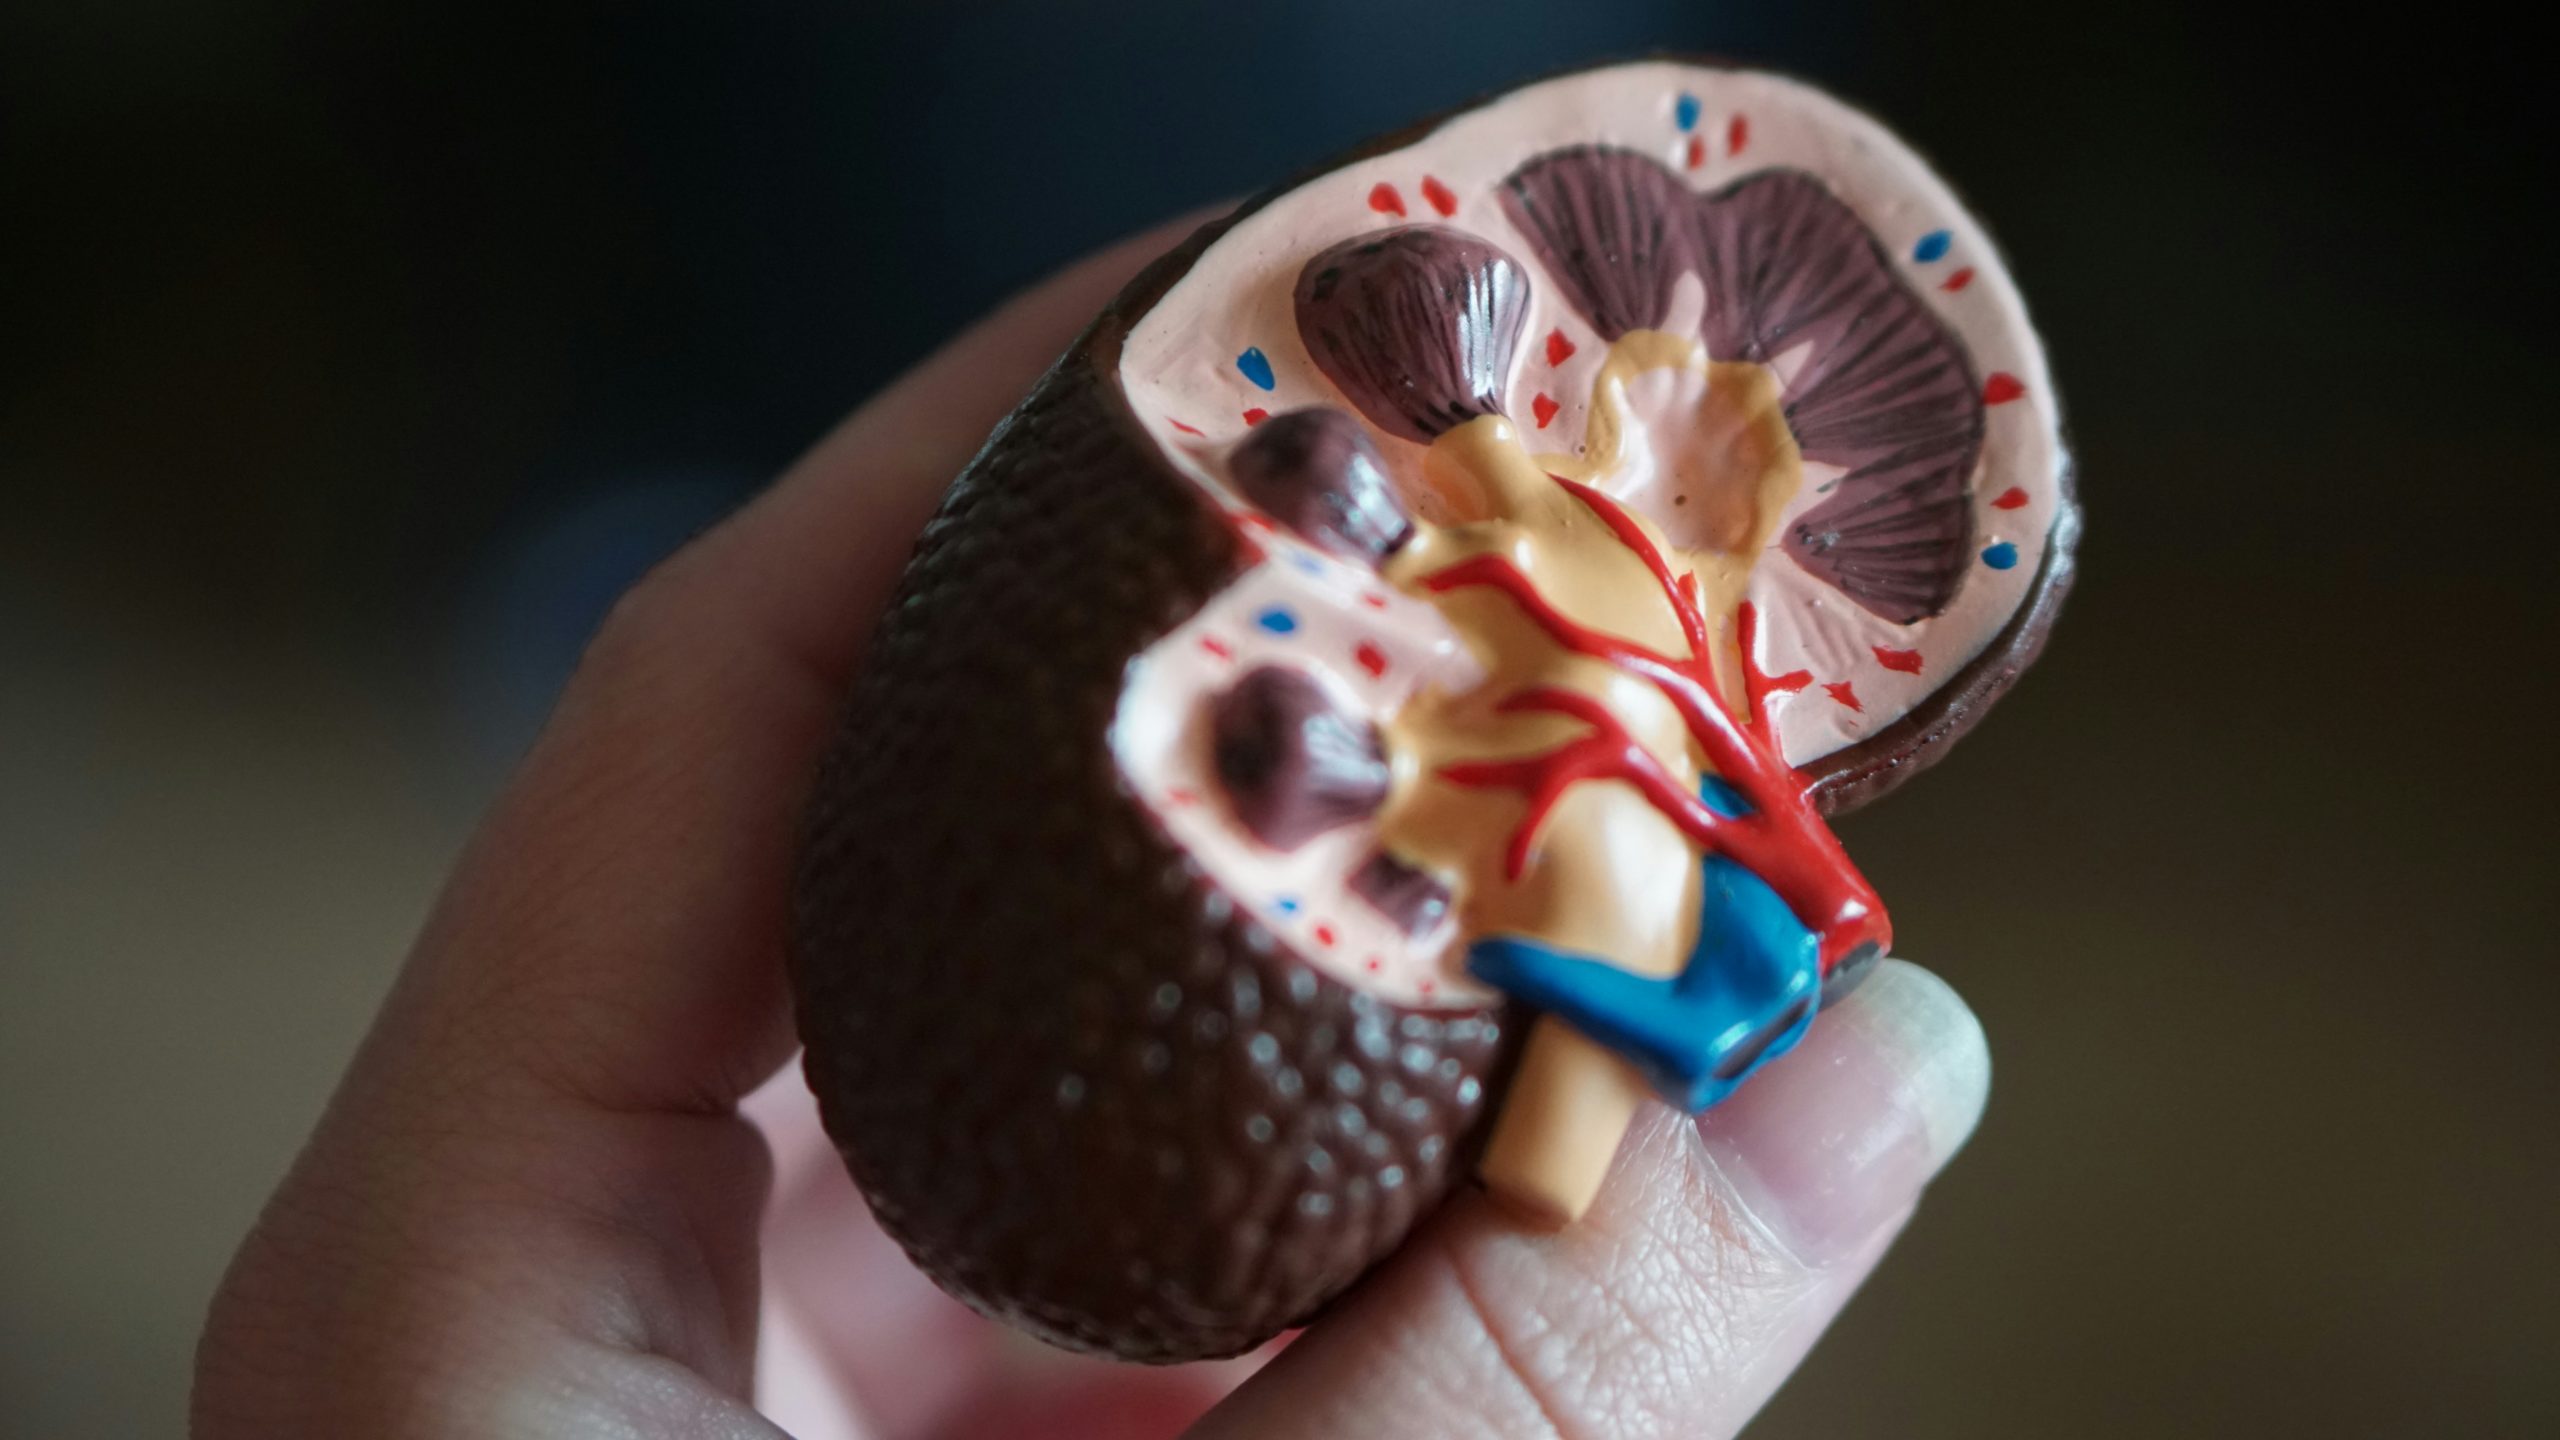 Πέτρες στους νεφρούς: Το Νο1 σημάδι που οι περισσότεροι άνθρωποι αγνοούν, σύμφωνα με γιατρούς